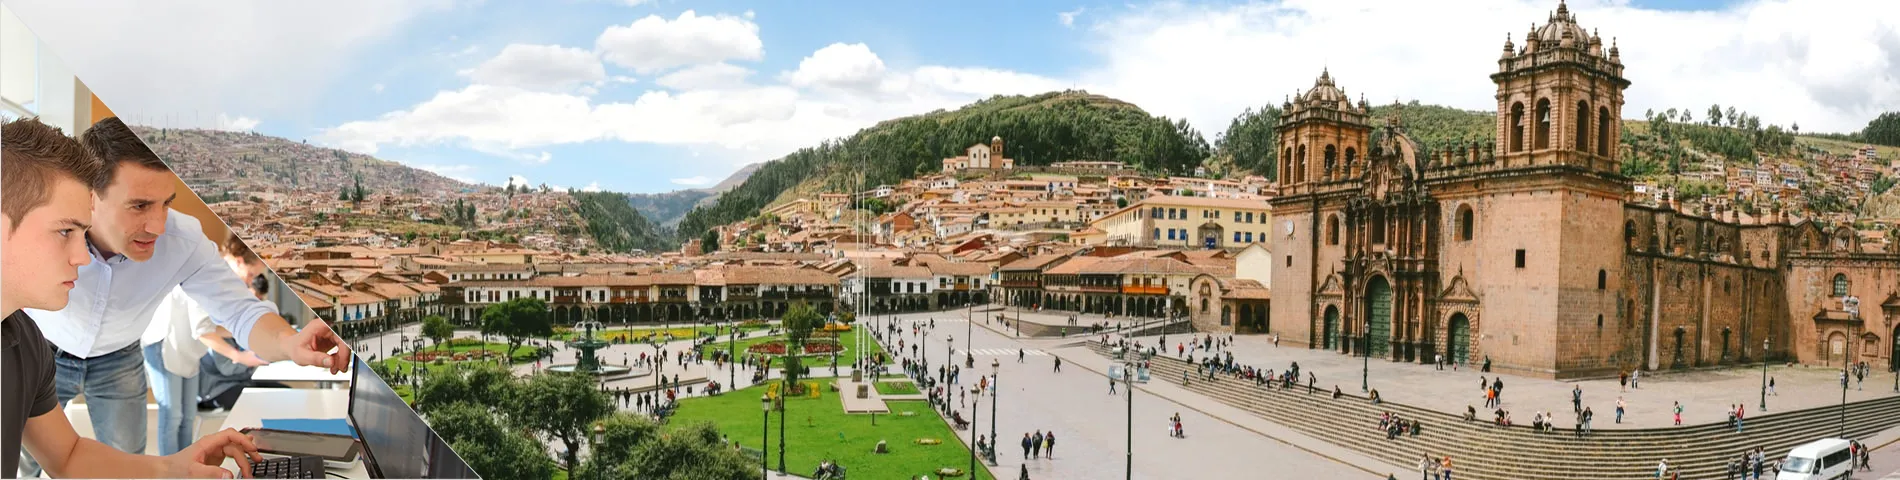 Cuzco - Programa de Estágio